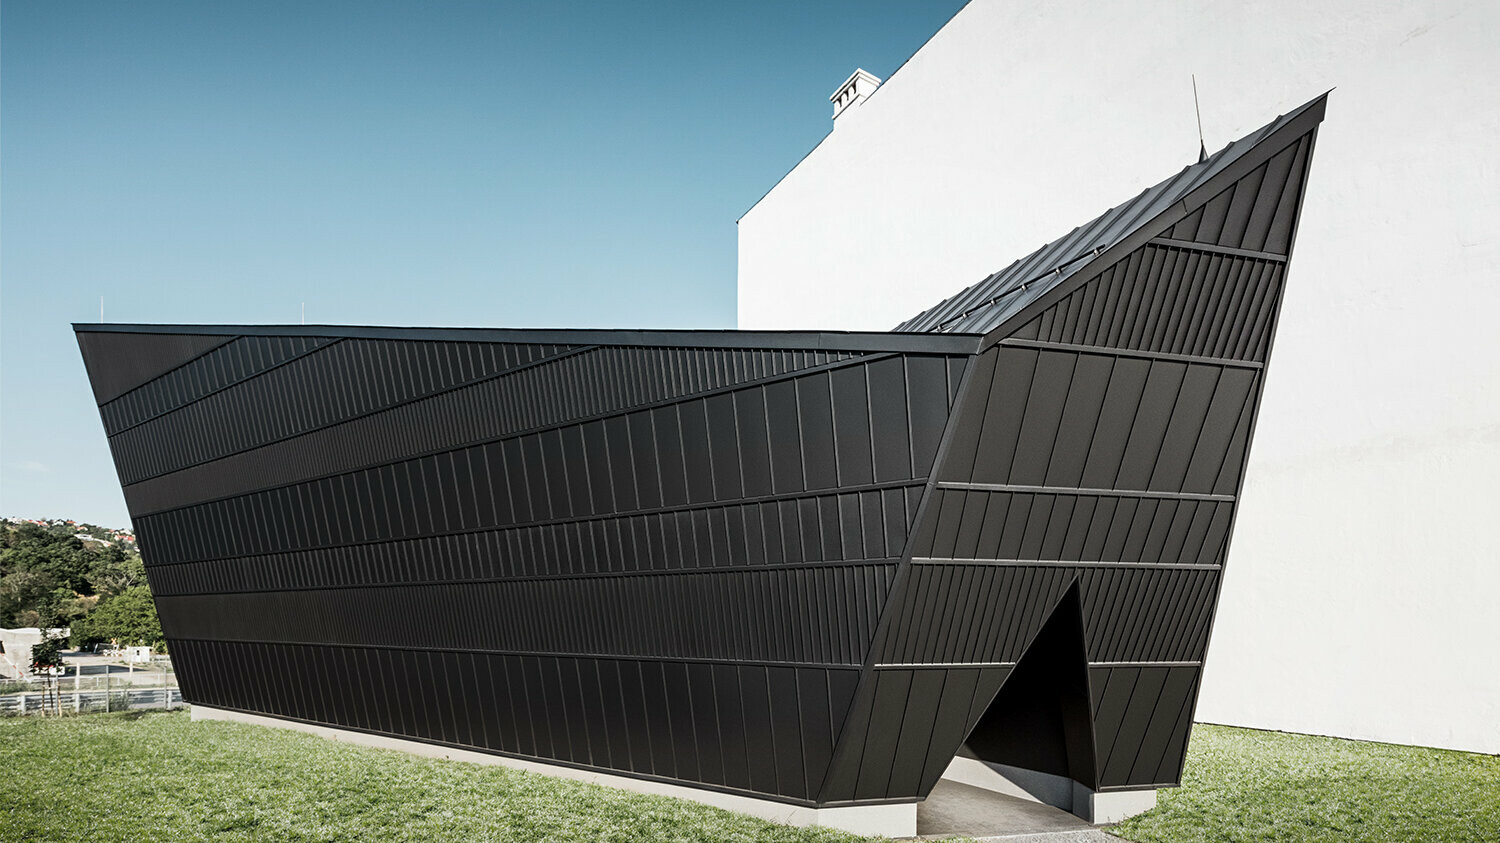 Boční perspektiva nového pavilonu kina Muzea ve Skanzenu, opláštěného černým hliníkem, navrženého architektem Istvánem Bársonym.